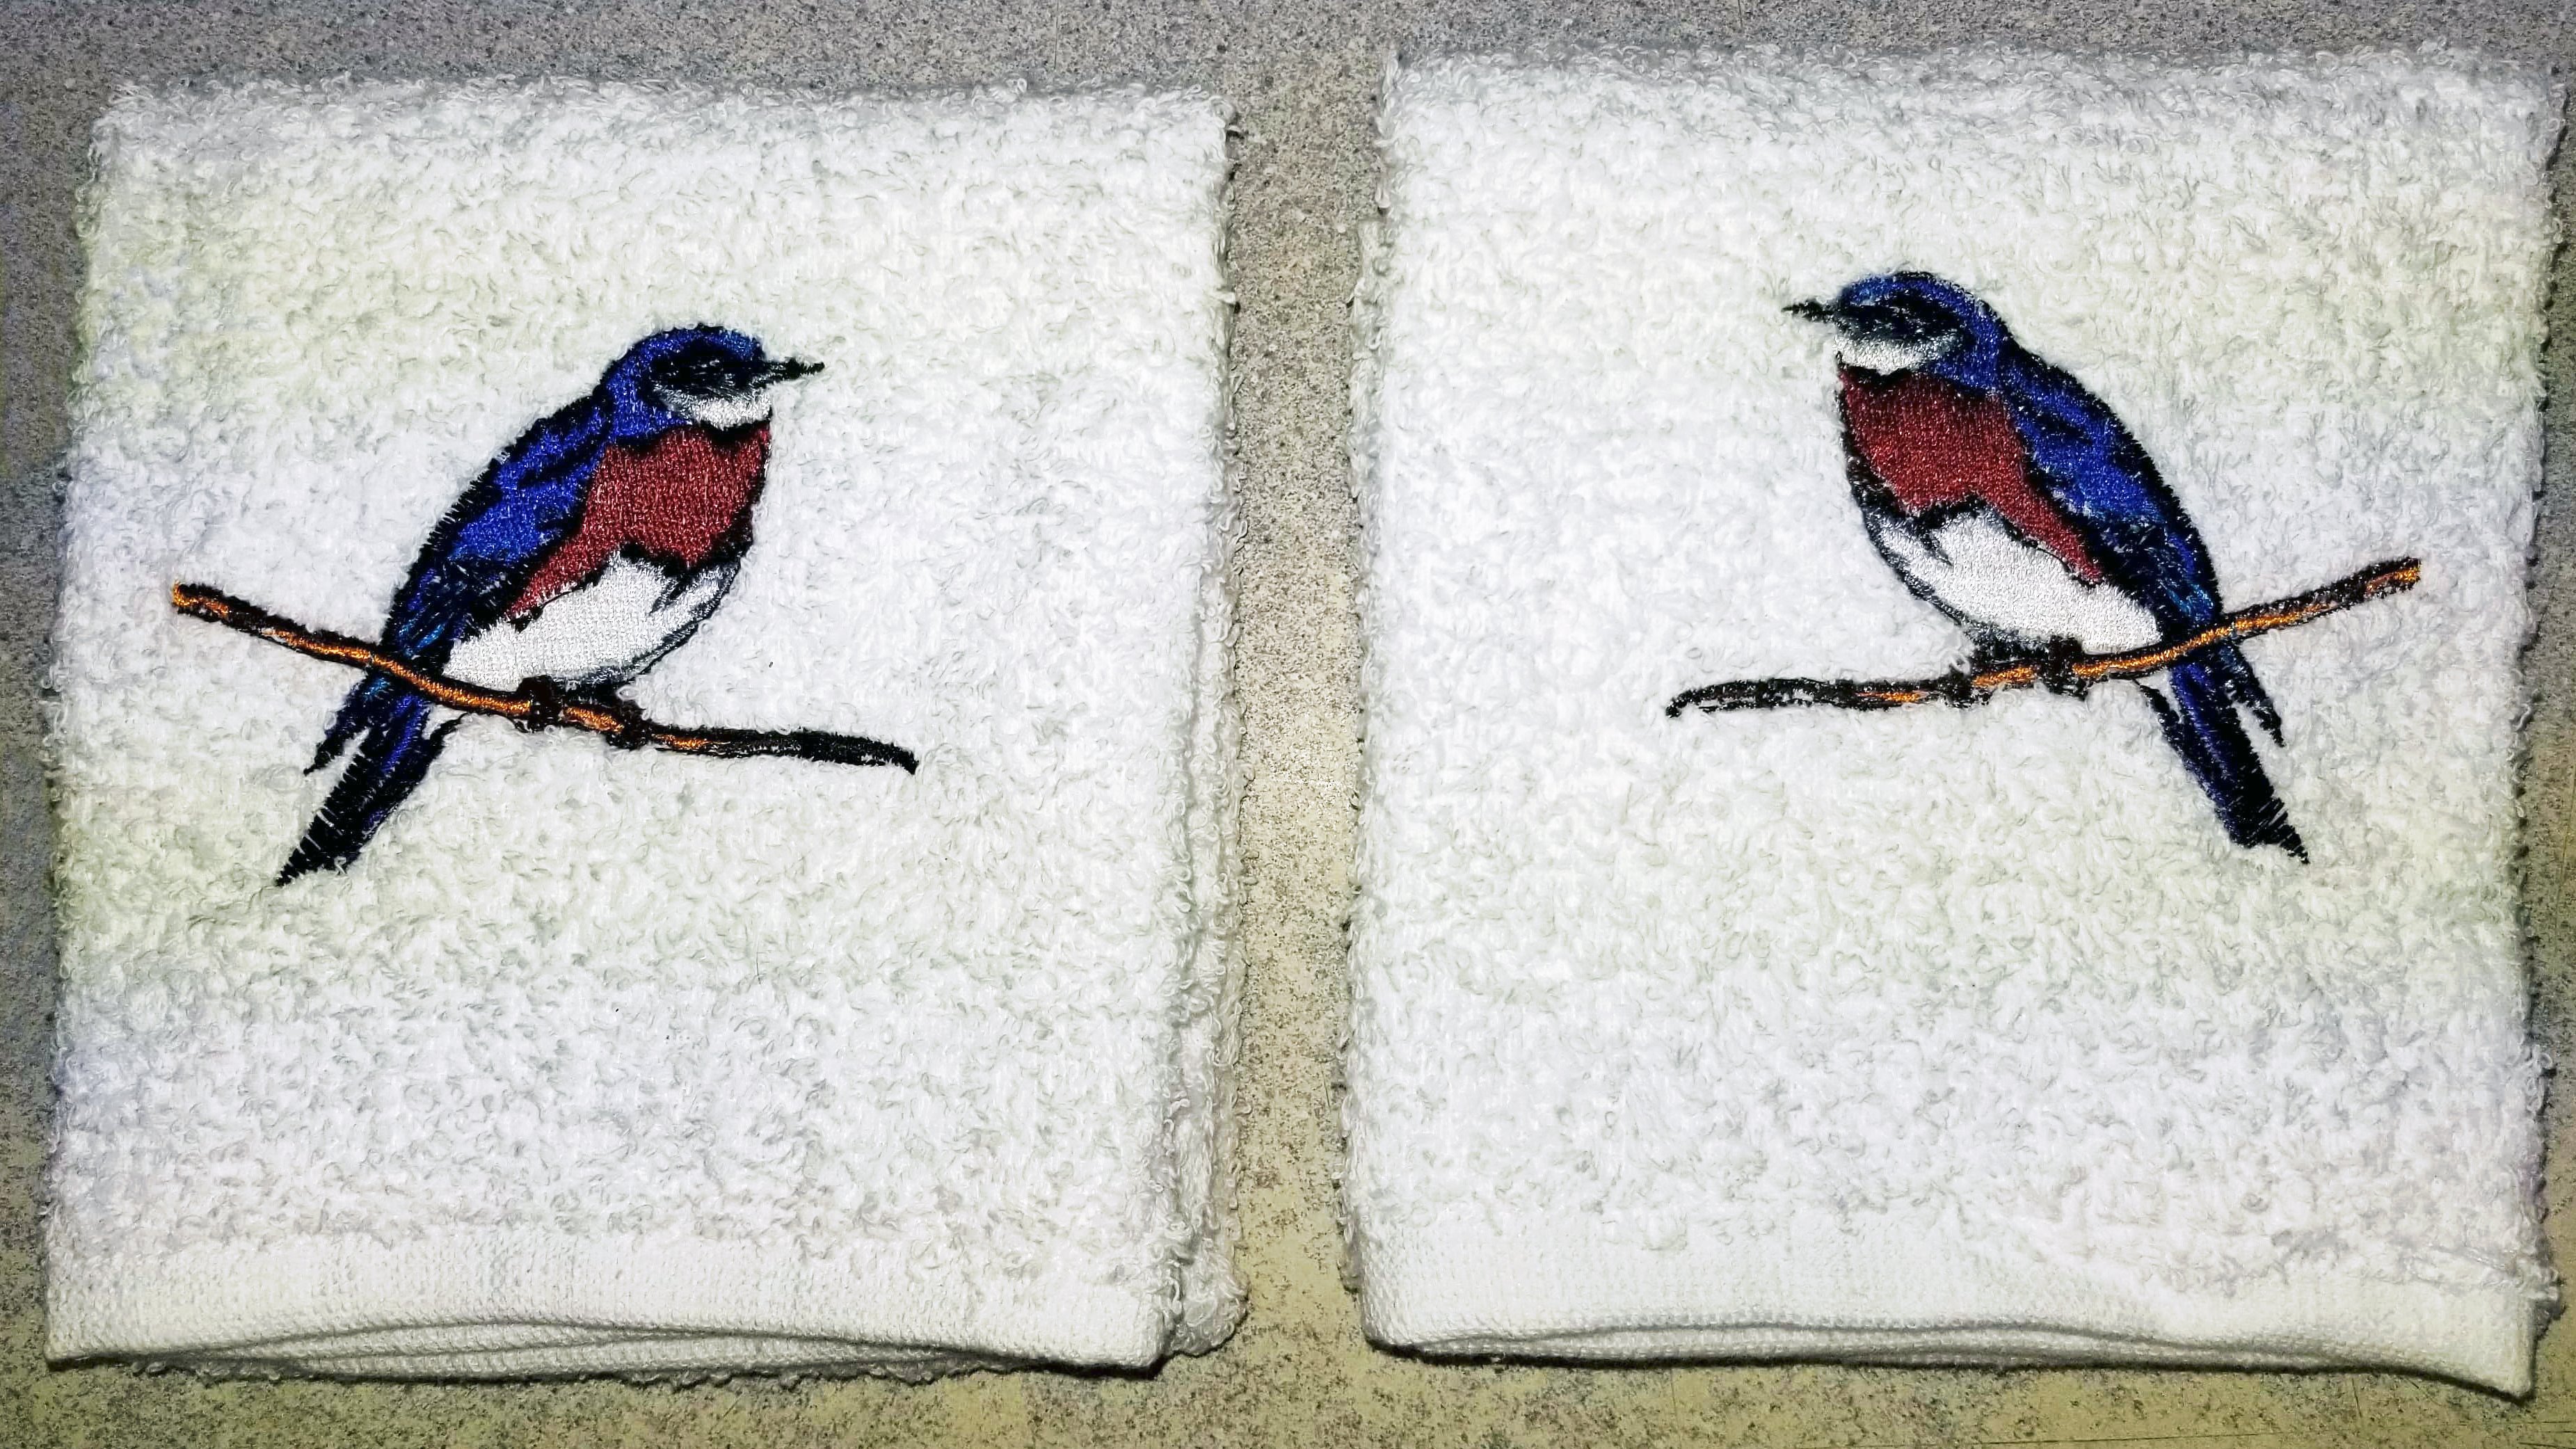 Bluebird towels